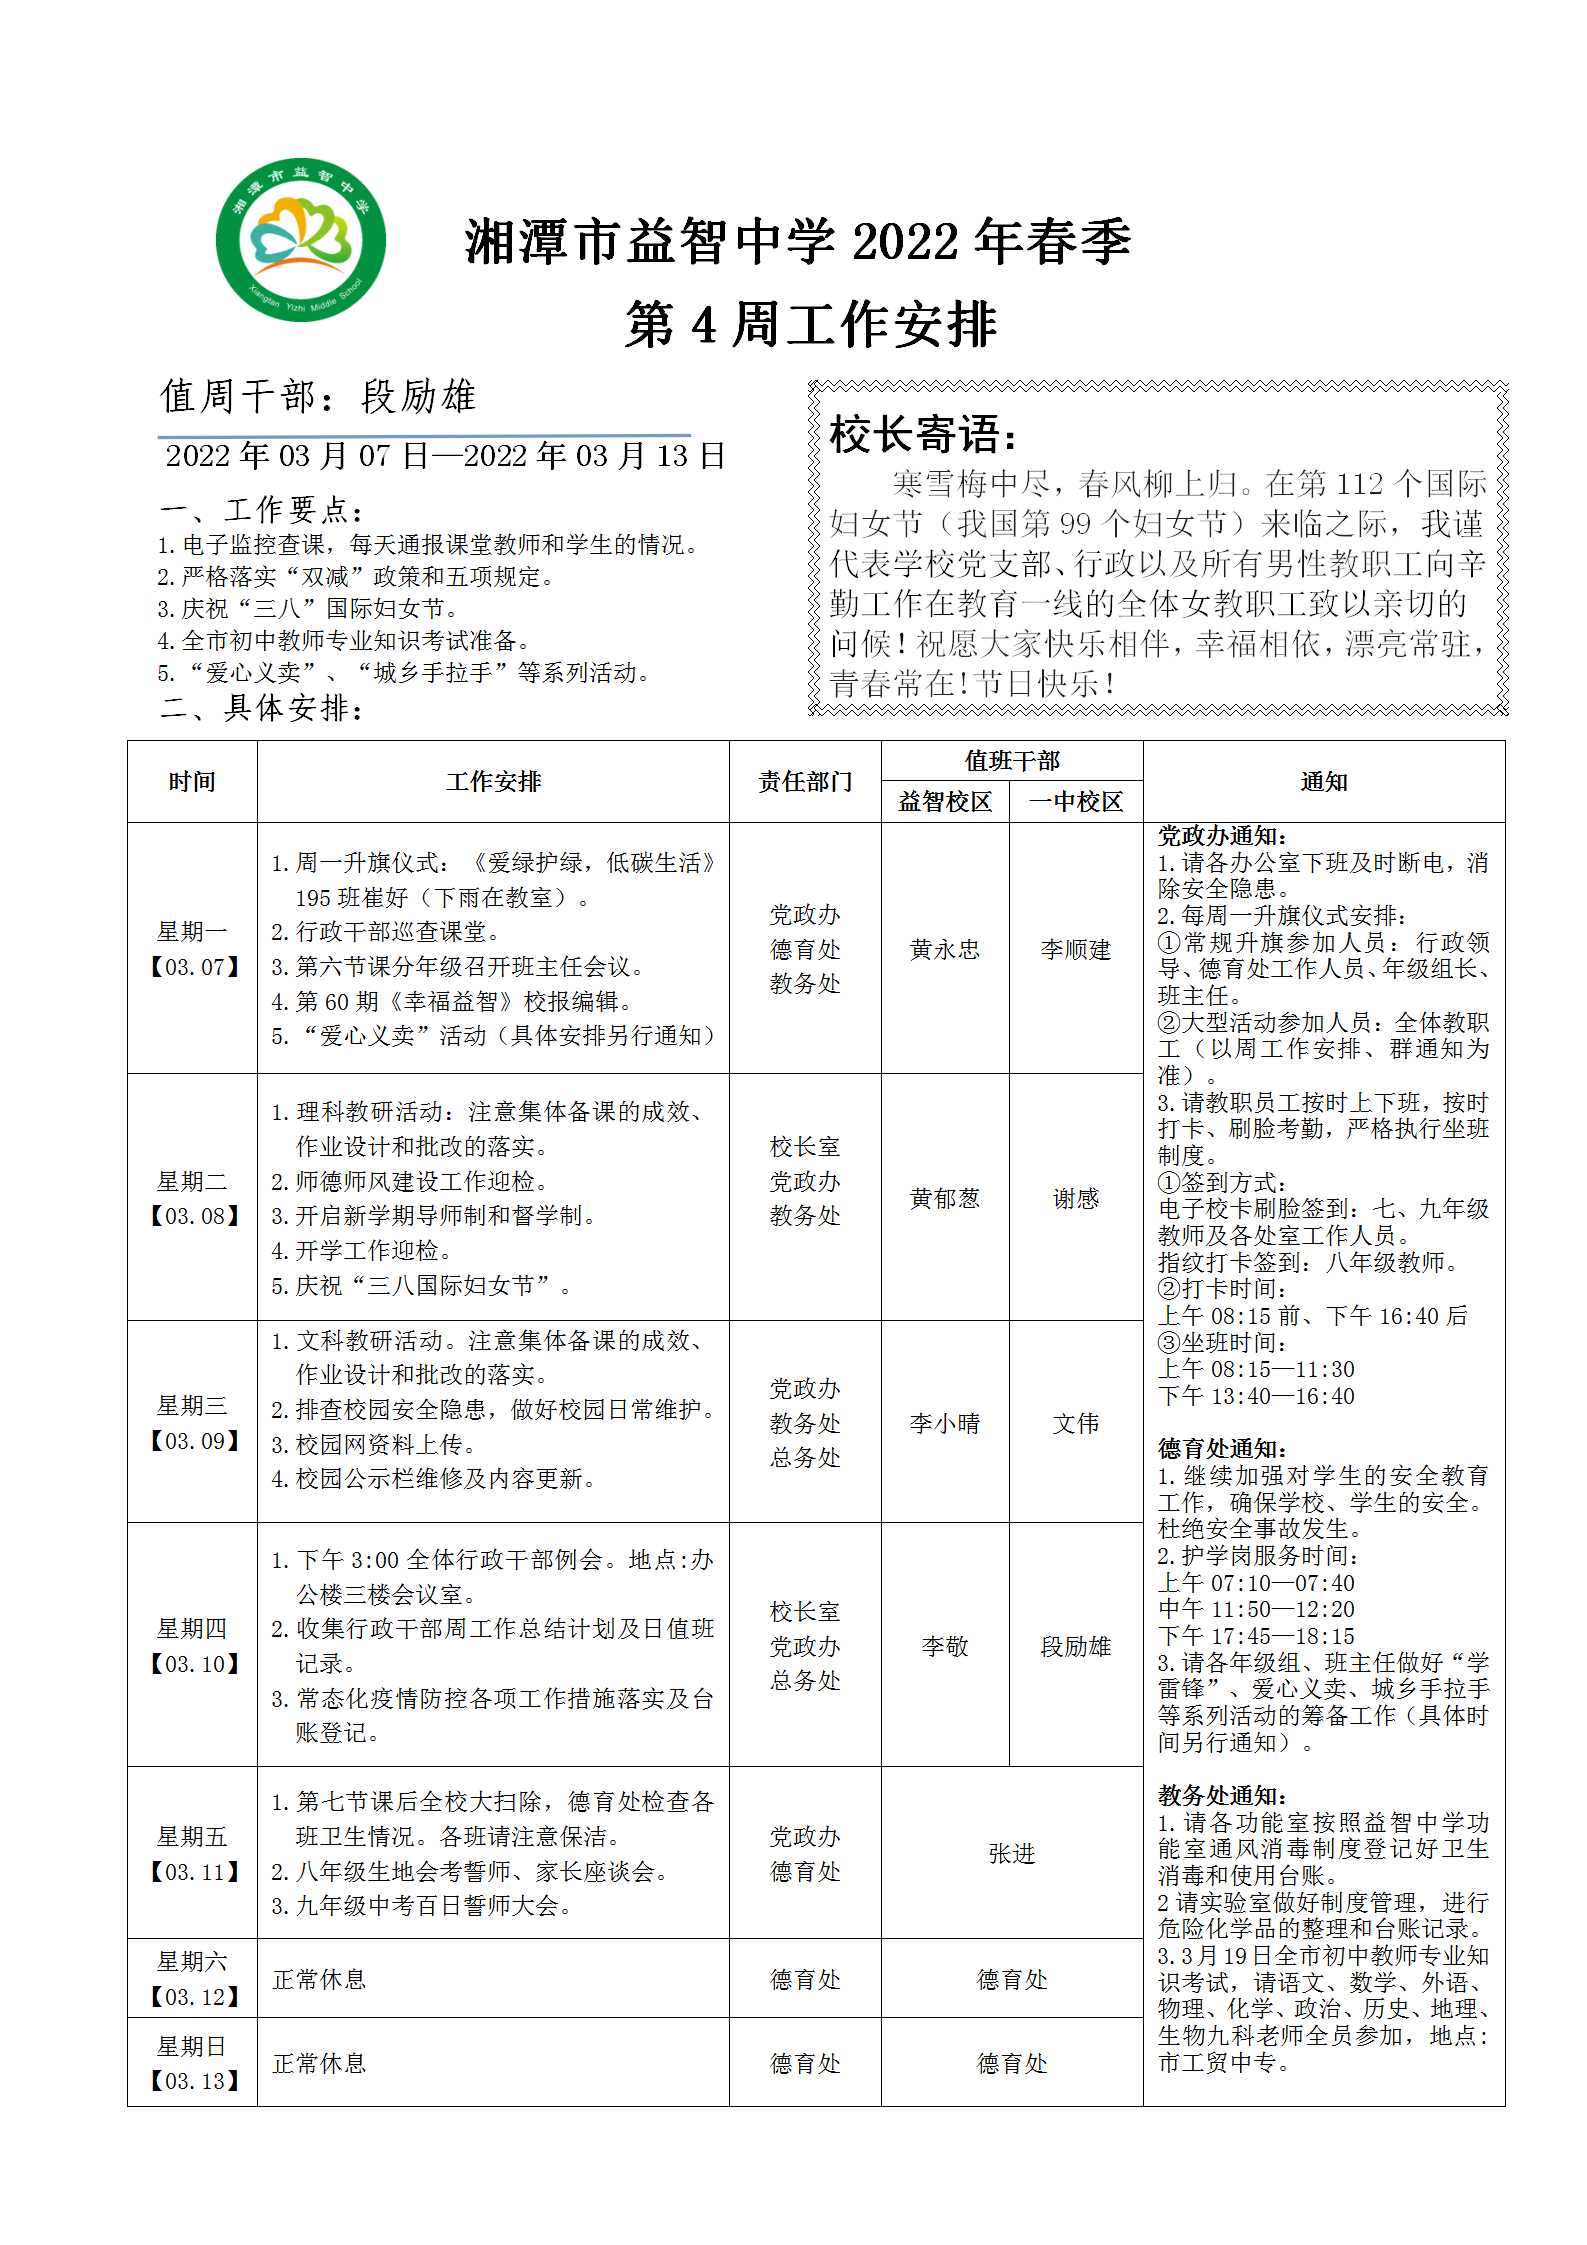 湘潭市益智中学2022年春季第四周工作安排